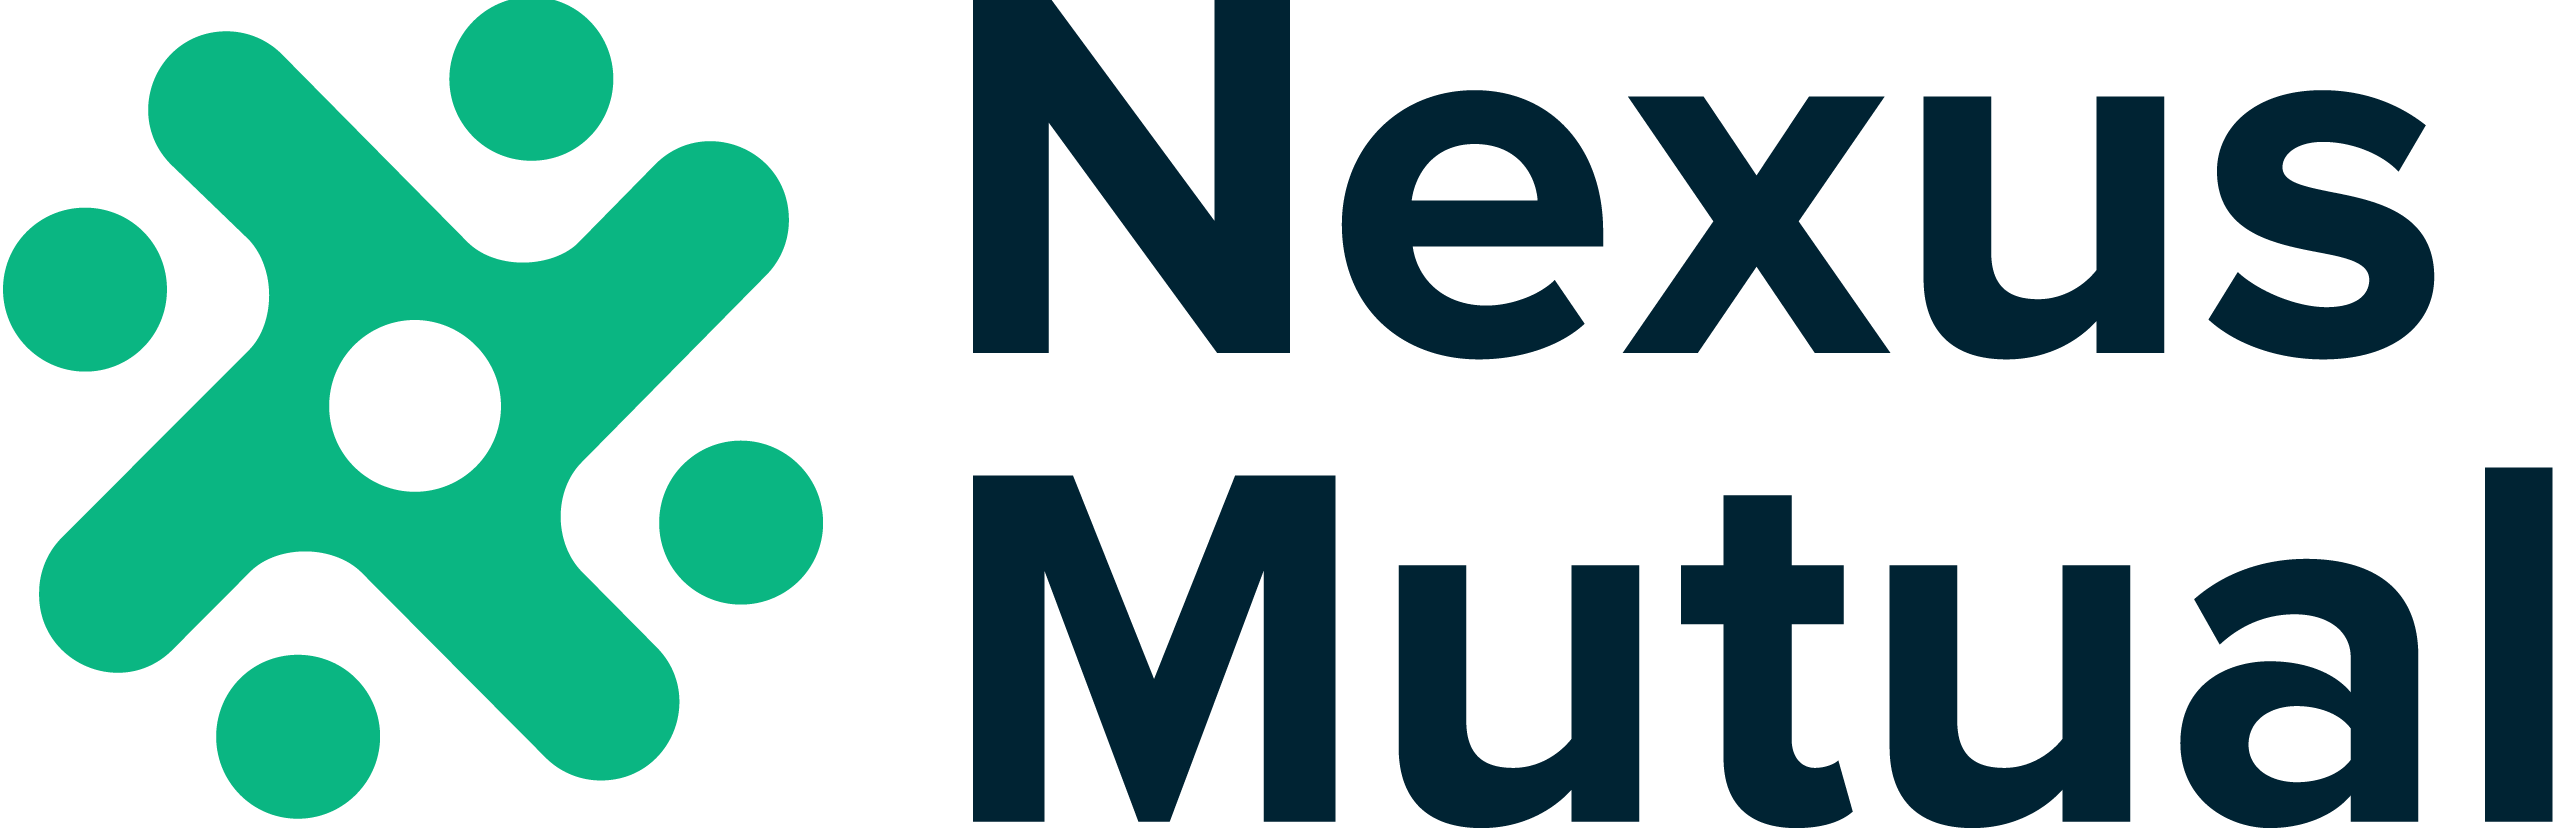 Nexus Mutual